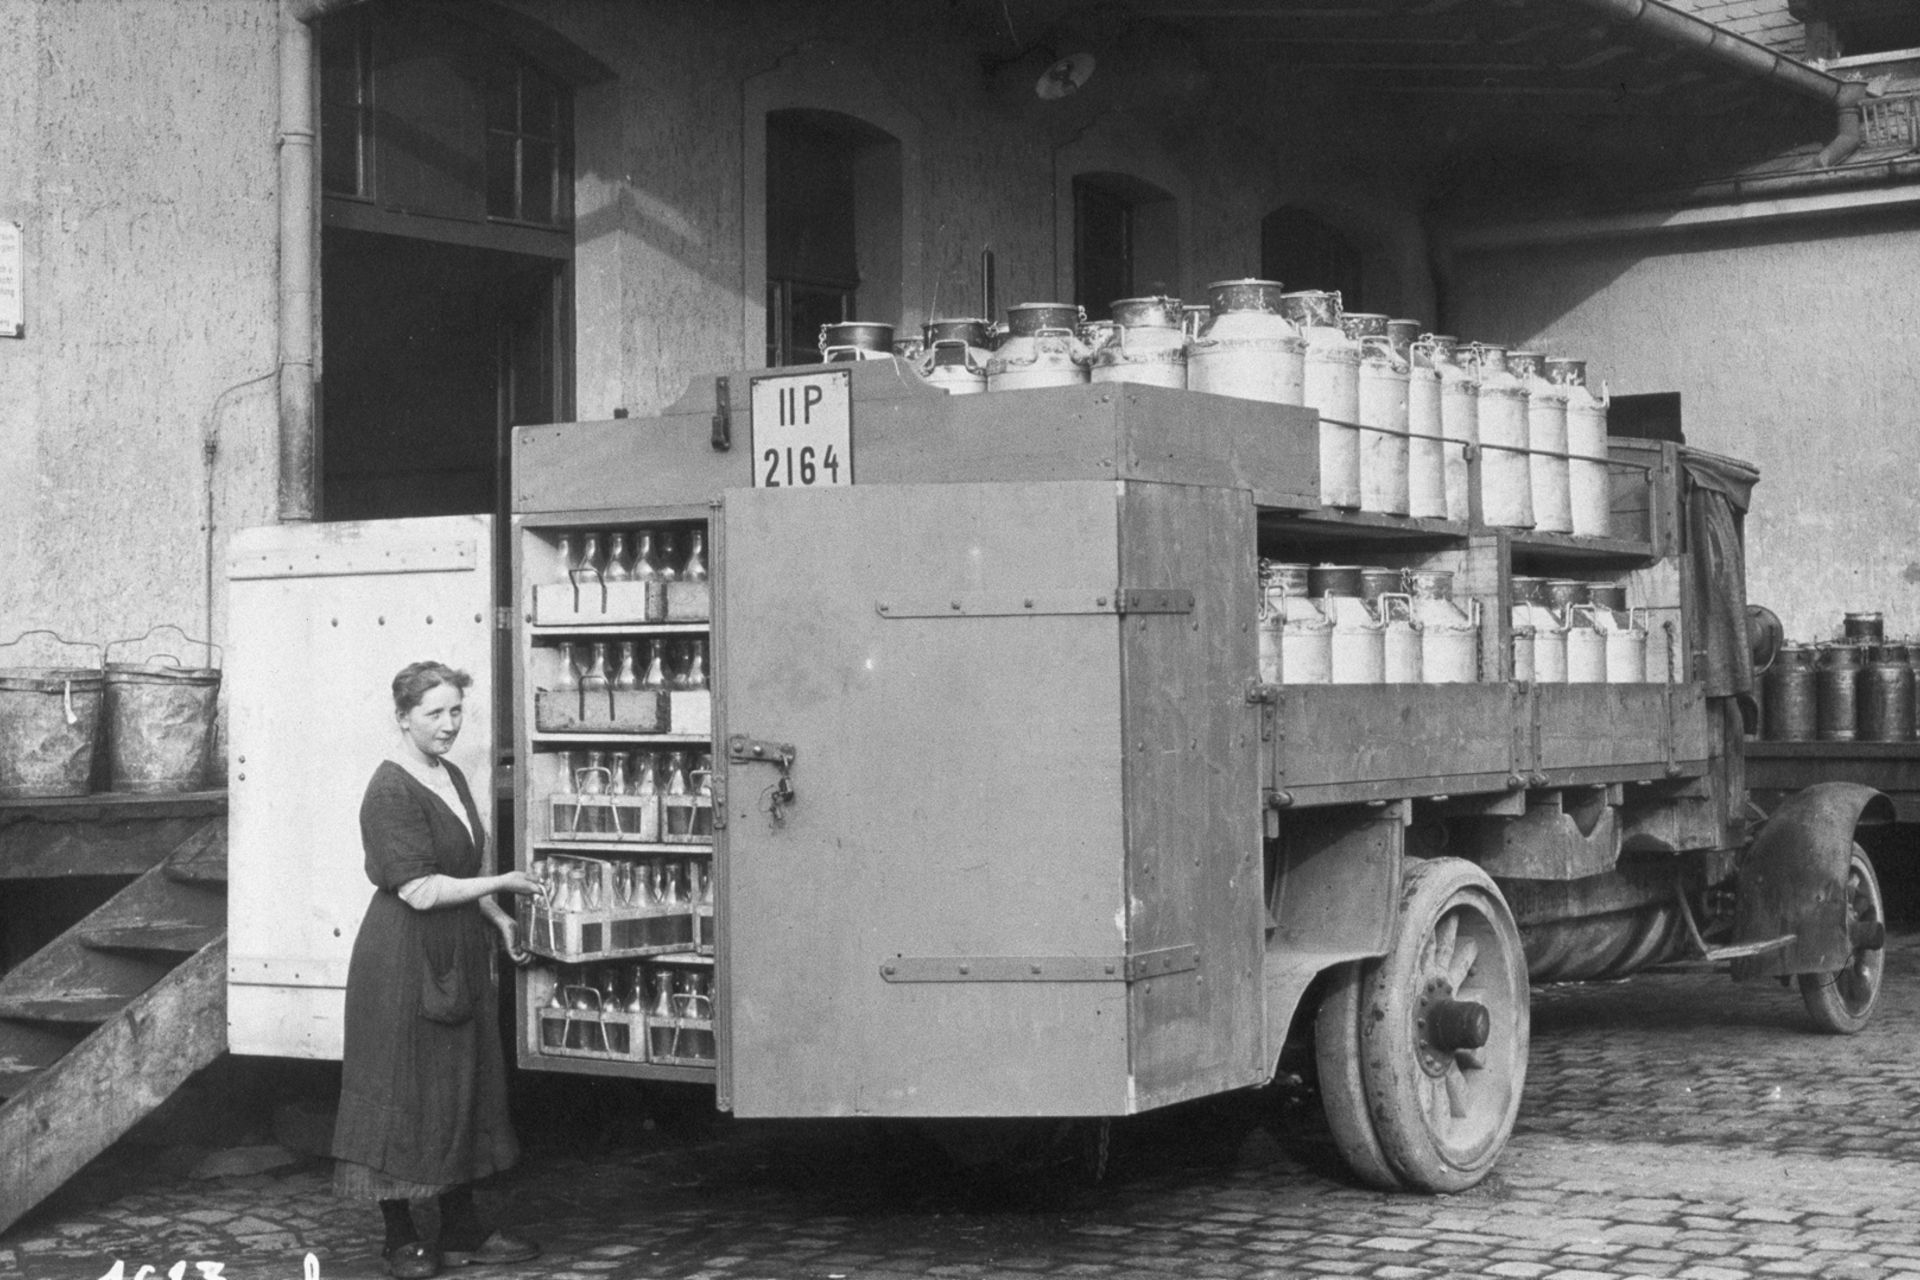 Schwarz-weiß Bild eines alten MAN Milchtransporters